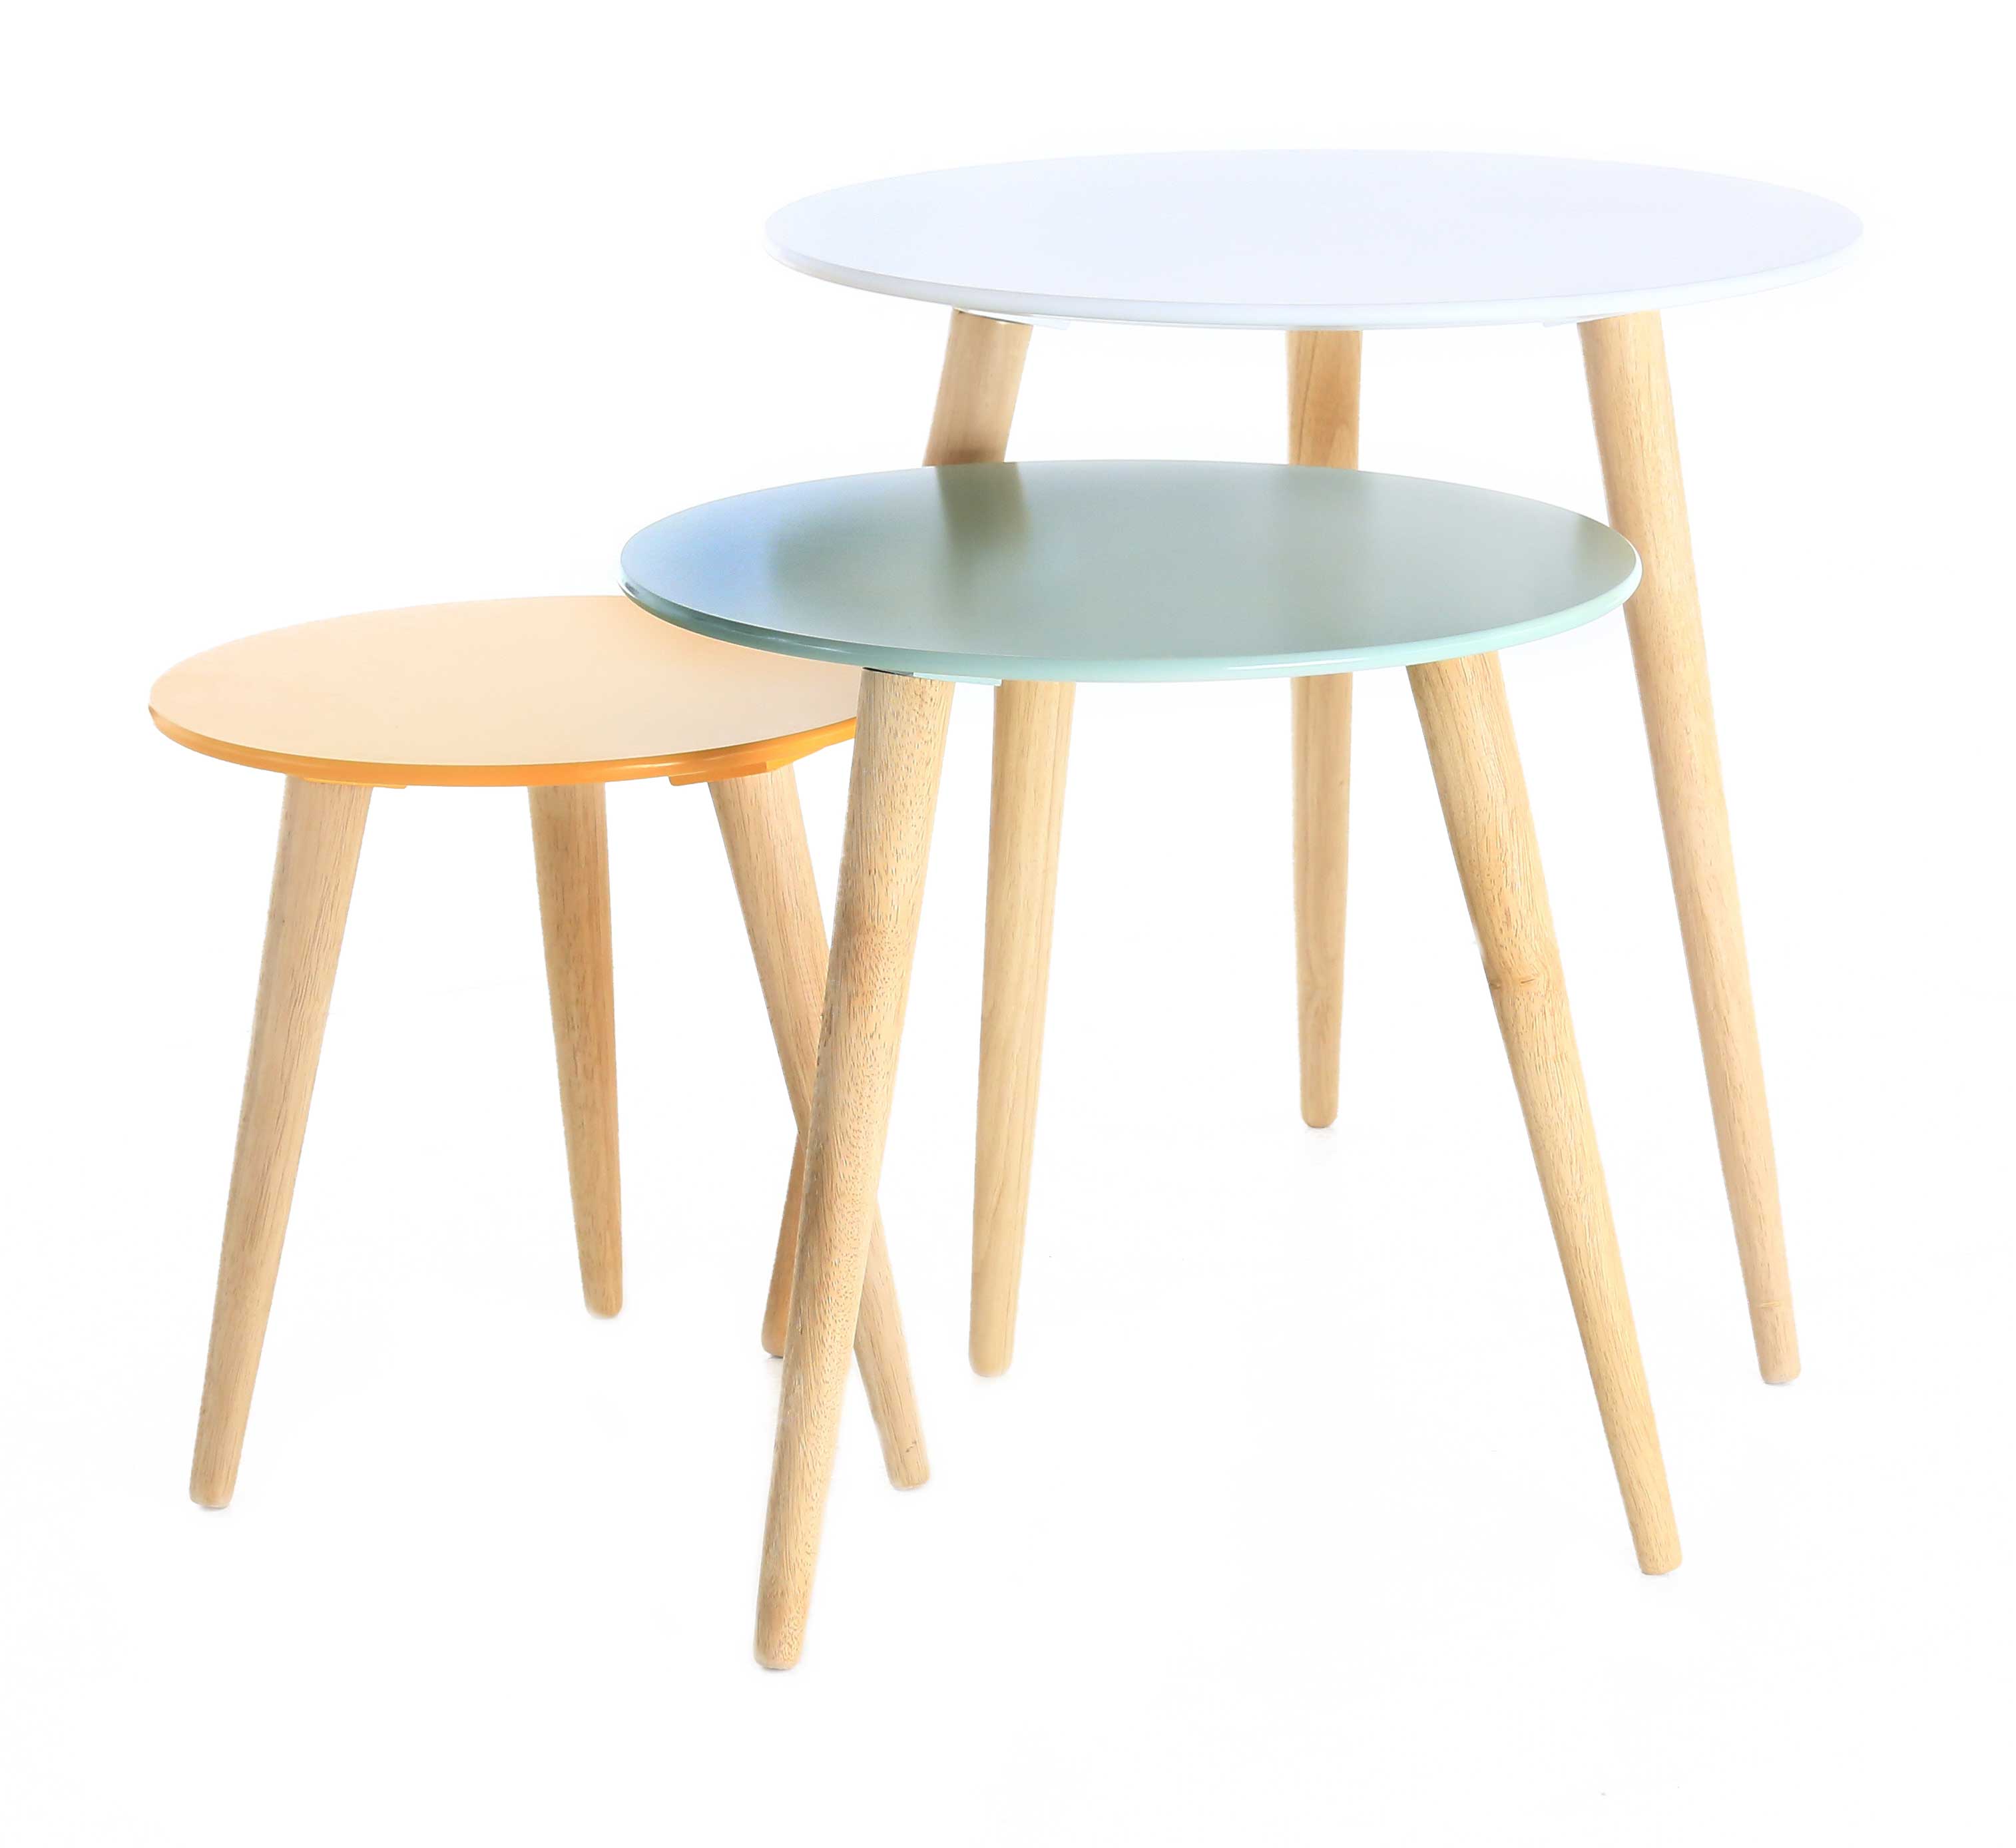 3x table gigogne ronde en bois coloré